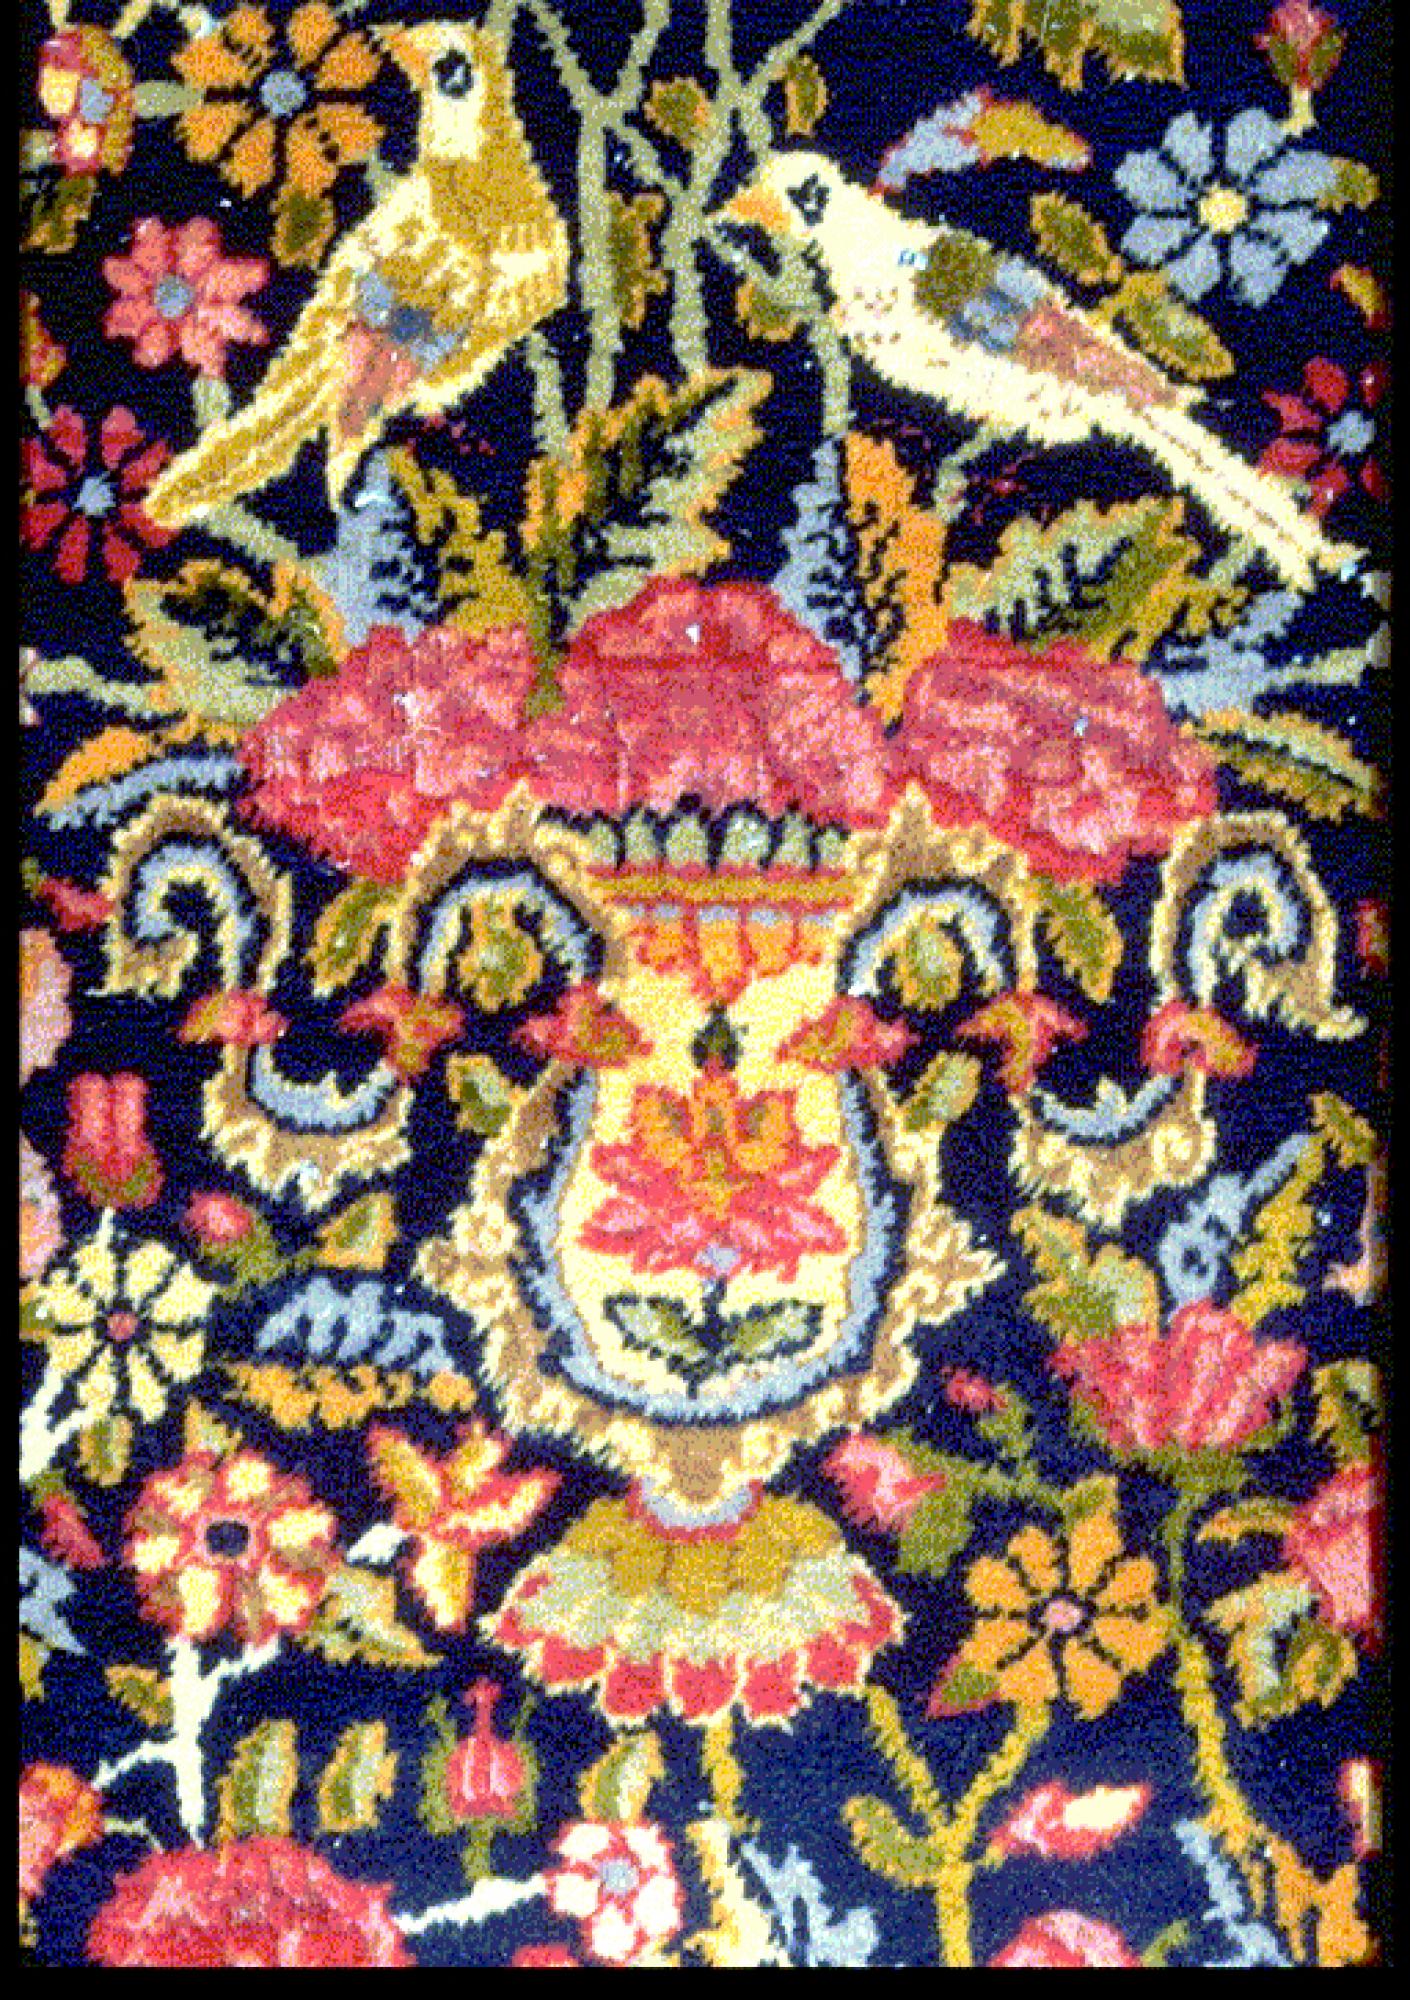 Histoire du tapis - Galerie parisienne spécialisée dans la vente de tapis anciens d'Orient